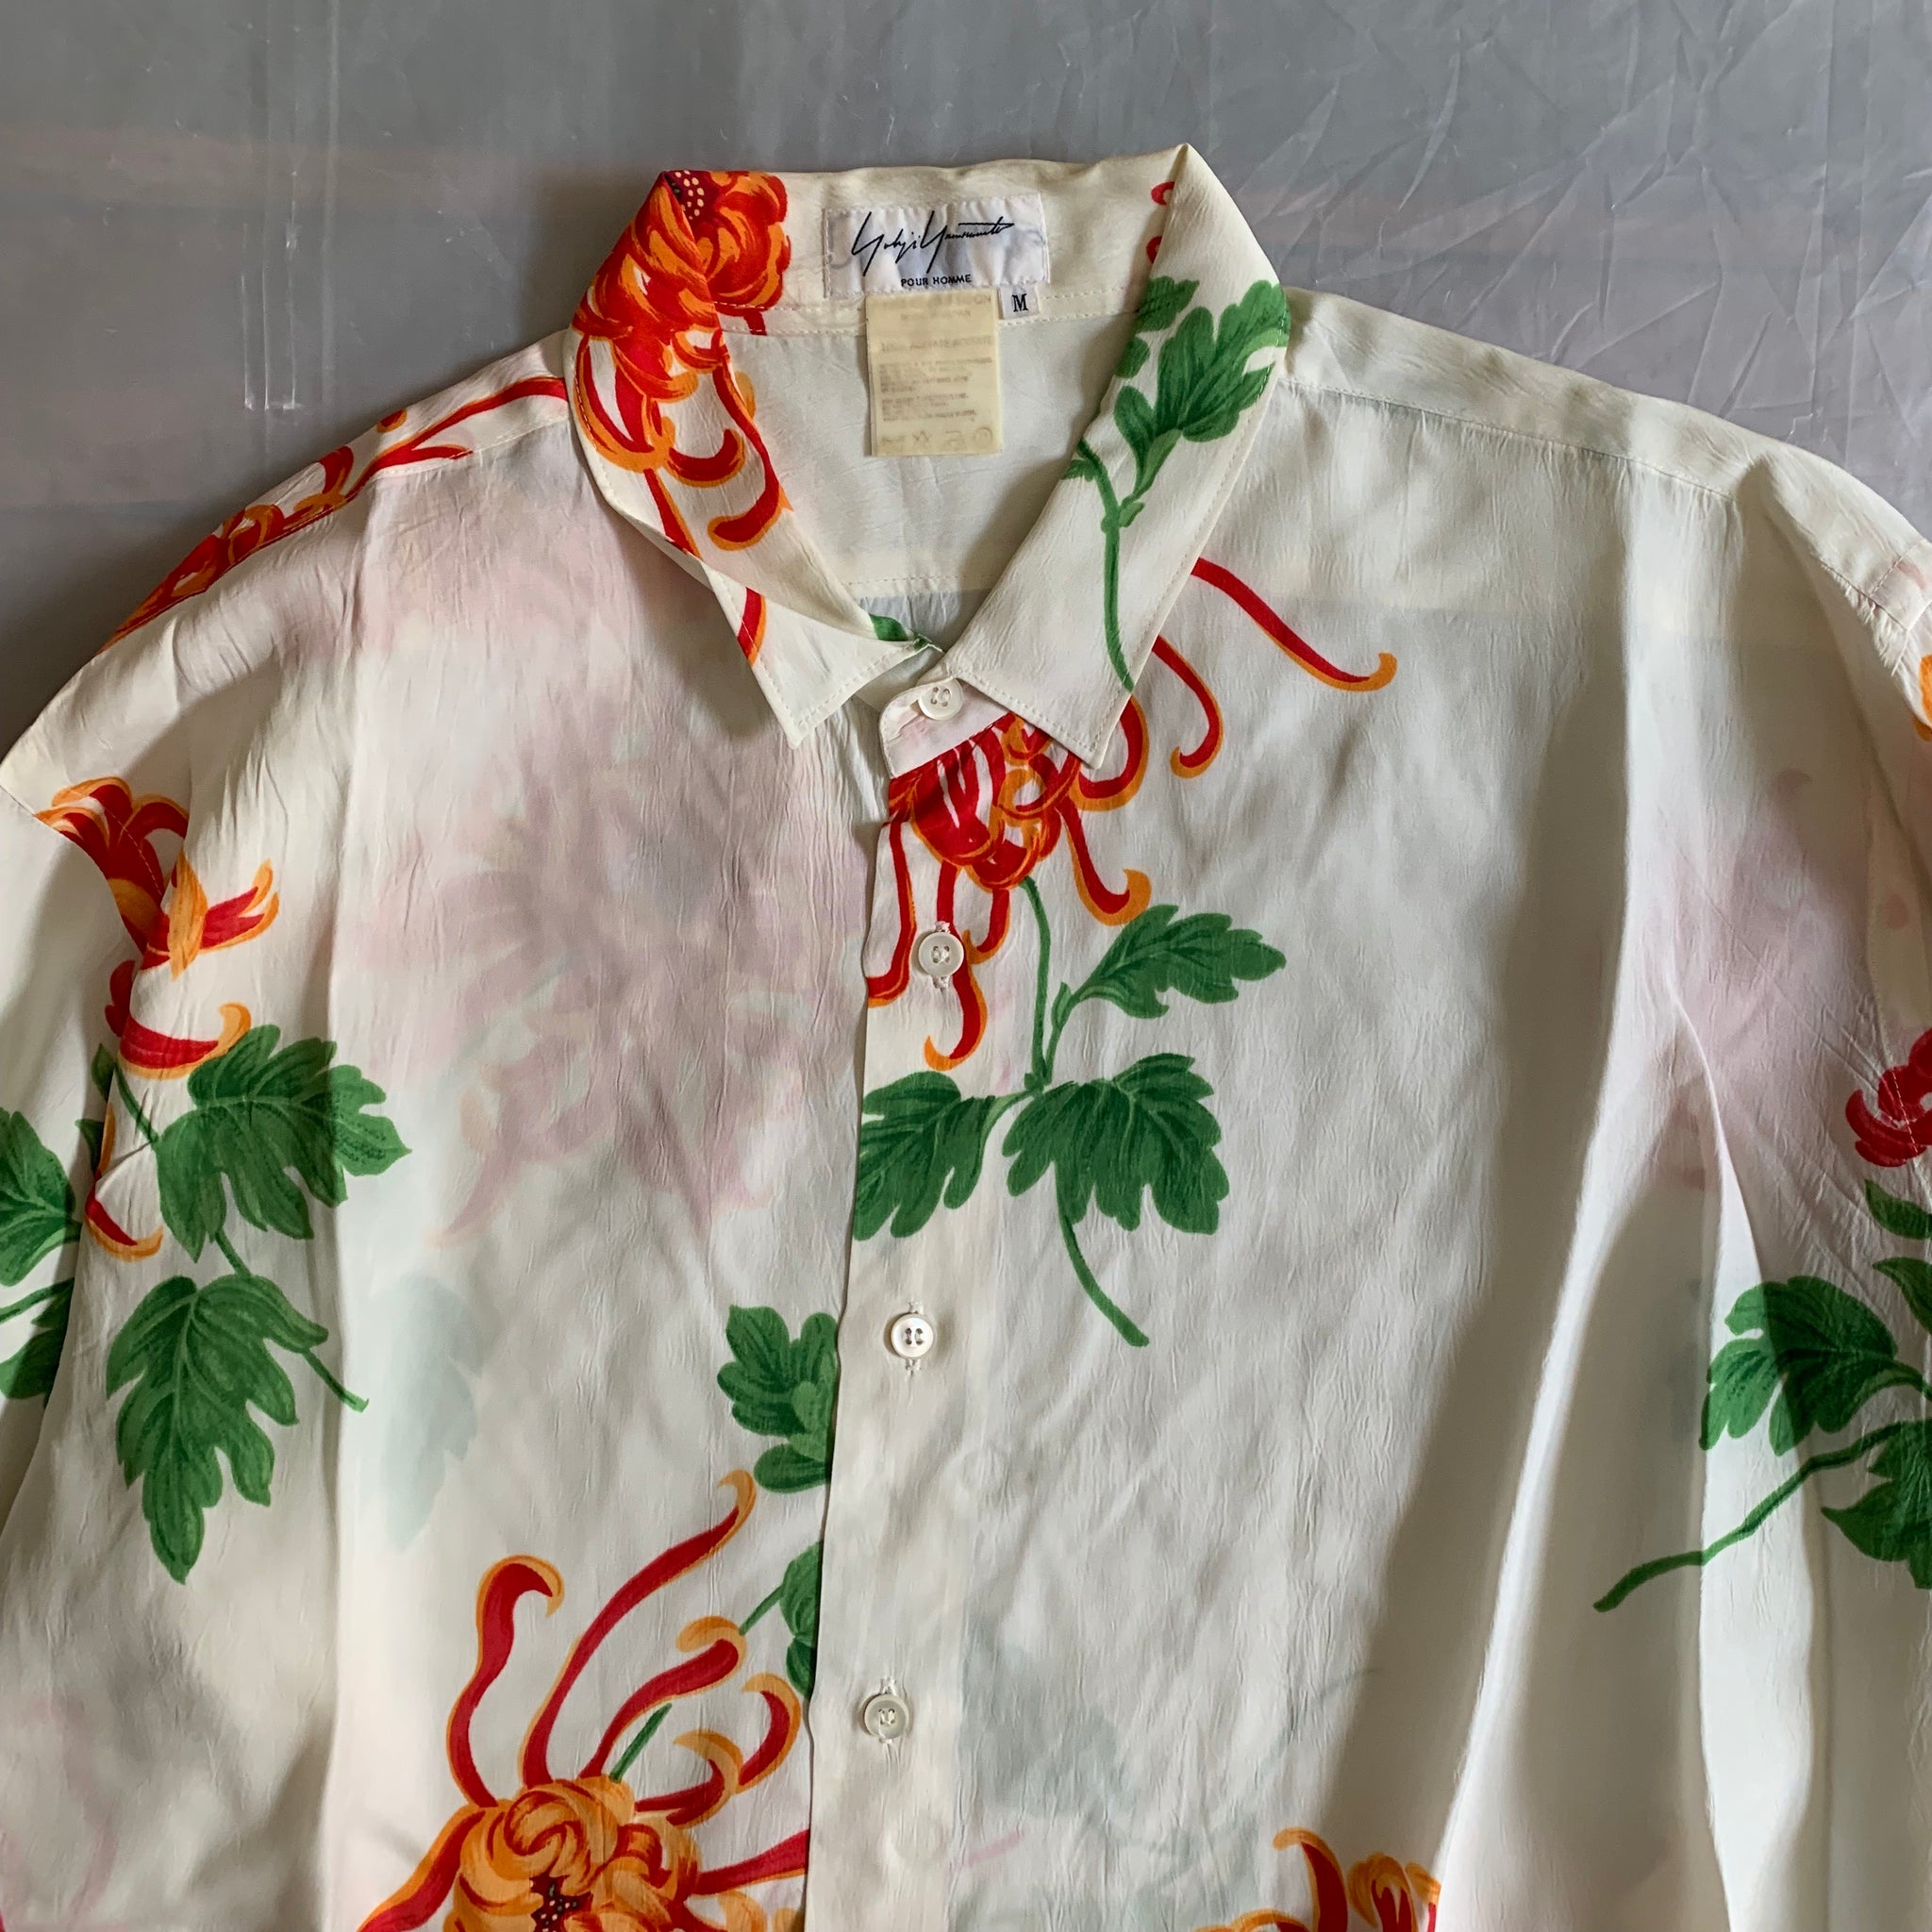 ss1996 Yohji Yamamoto Oversize Acetate Floral Print Shirt - Size